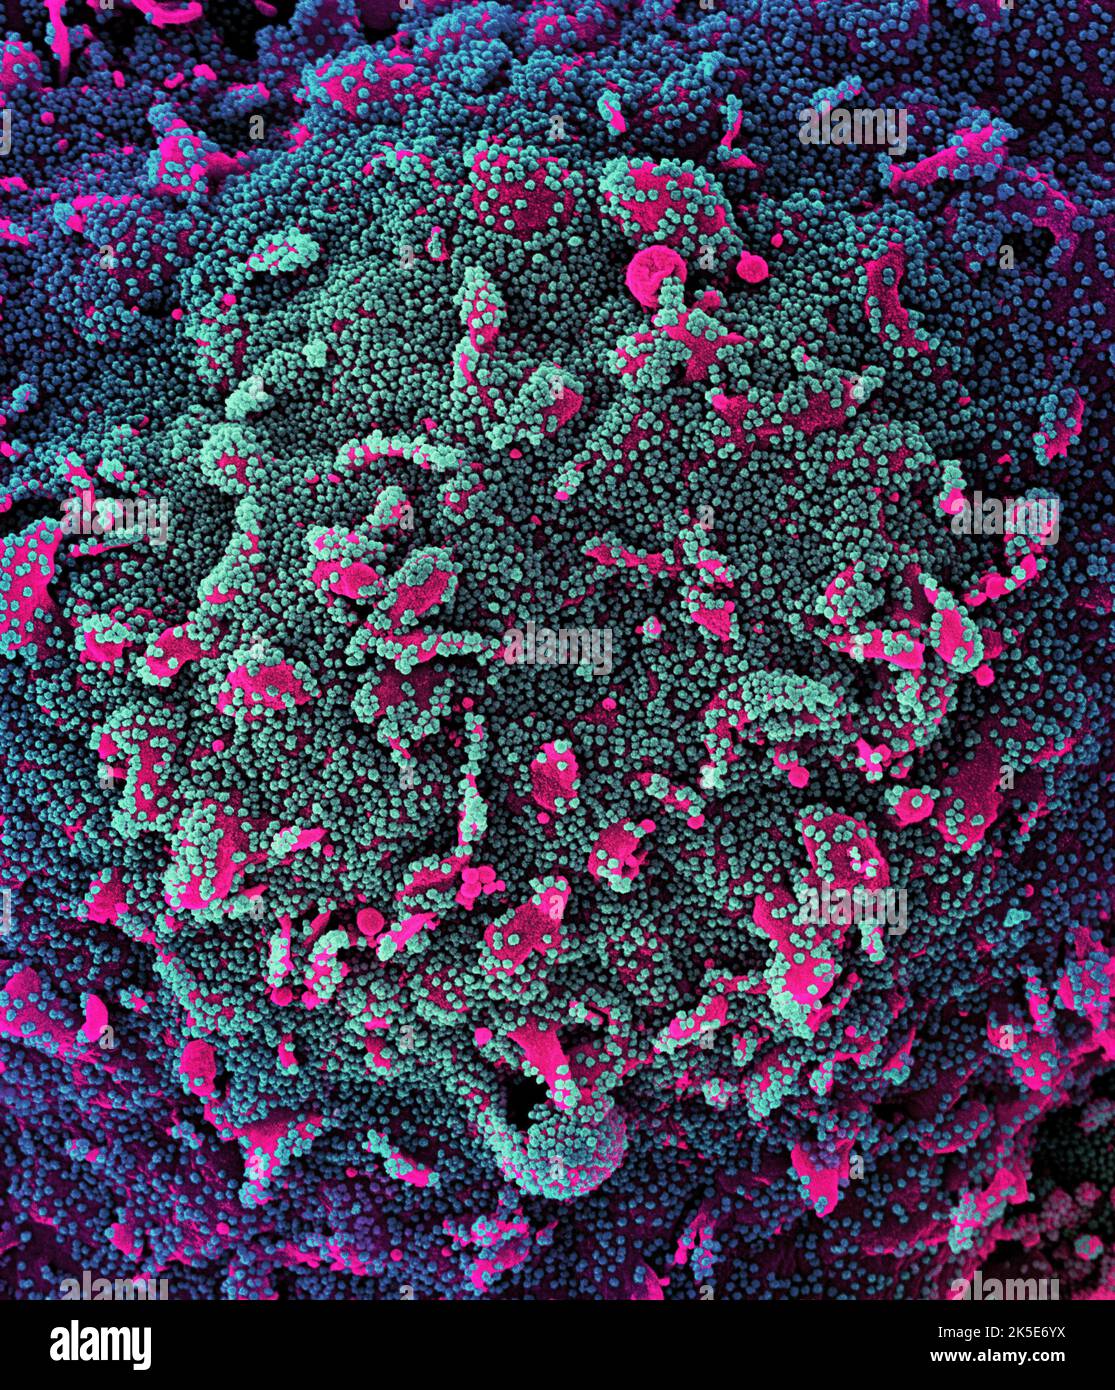 Nuovo Coronavirus SARS-COV-2. Micrografia elettronica a scansione colorata di una cellula (rosa) fortemente infettata con particelle di virus SARS-COV-2 (teal e viola), isolata da un campione di paziente. Immagine acquisita presso la NIAID Integrated Research Facility (IRF) a Fort Detrick, Maryland. Una versione composita ottimizzata e migliorata di sei immagini a scansione di micrografia elettronica, Credit: NIAID Foto Stock